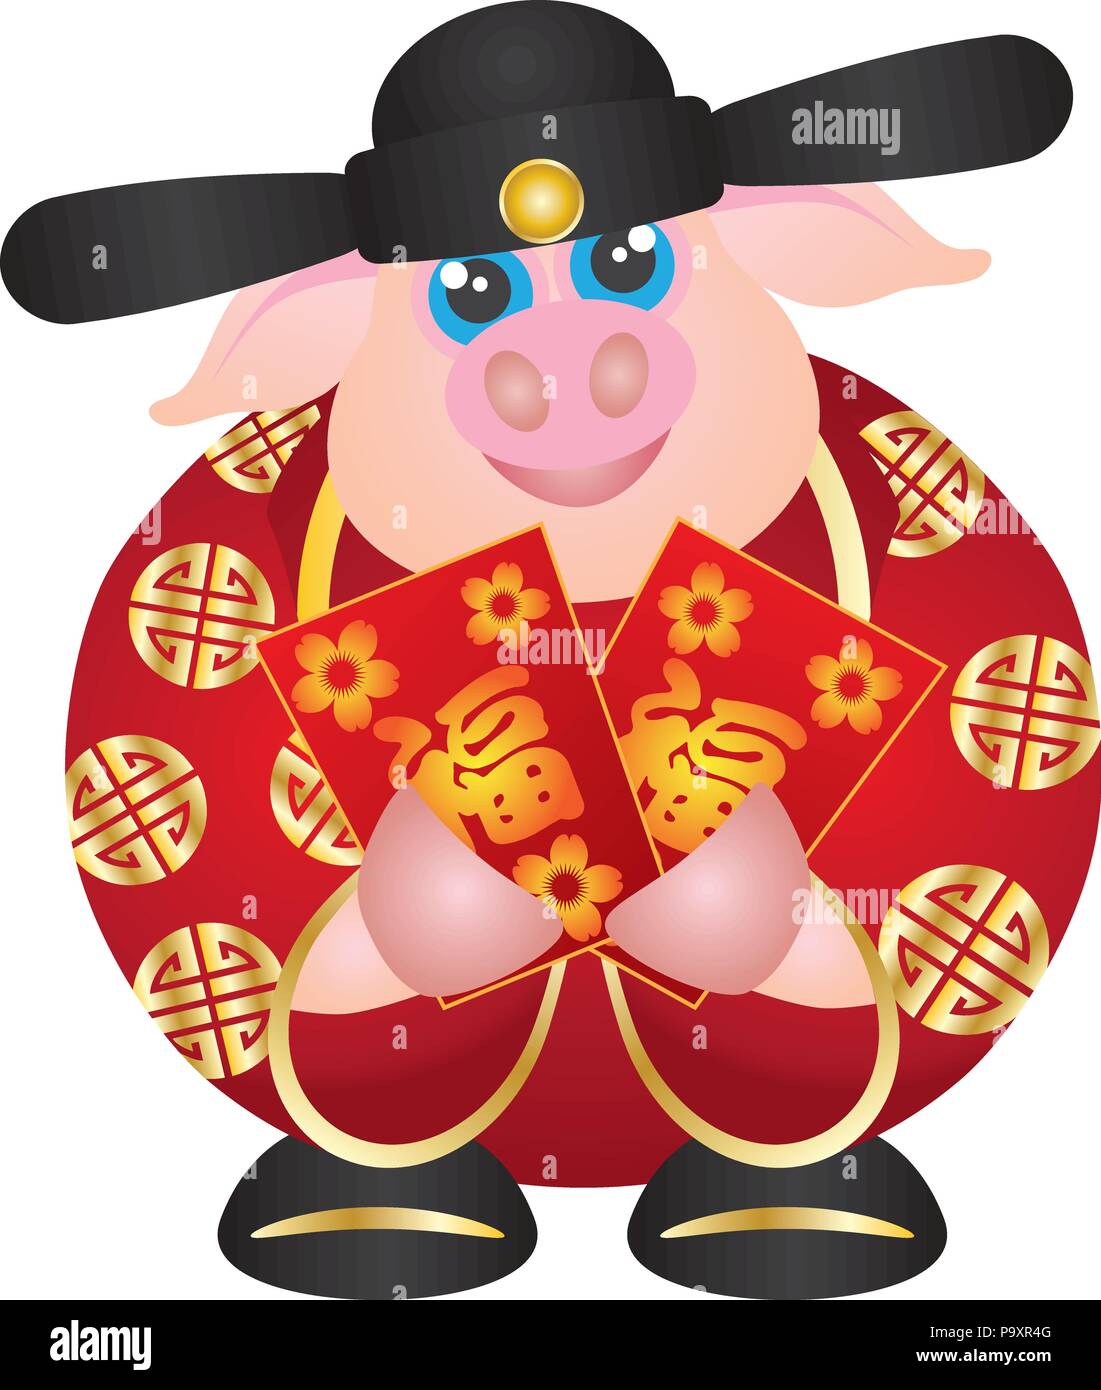 2019 Feliz Año Nuevo Lunar chino del cerdo prosperidad dios dinero manteniendo el dinero rojo Paquete con prosperidad Ilustración de texto sobre fondo blanco. Ilustración del Vector